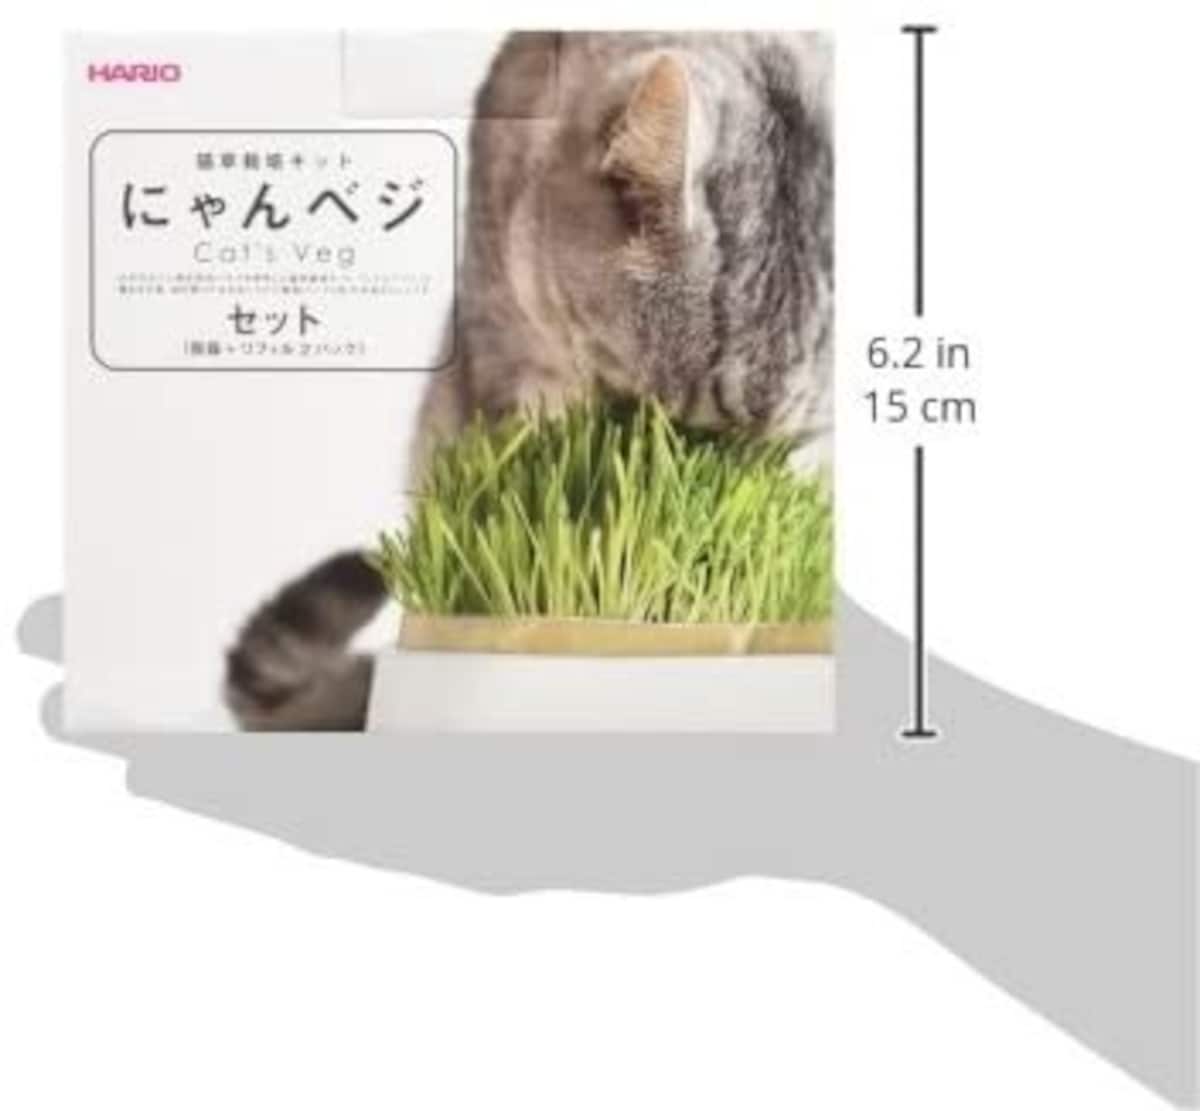  猫草栽培キットにゃんベジセット【獣医師おすすめ】画像4 